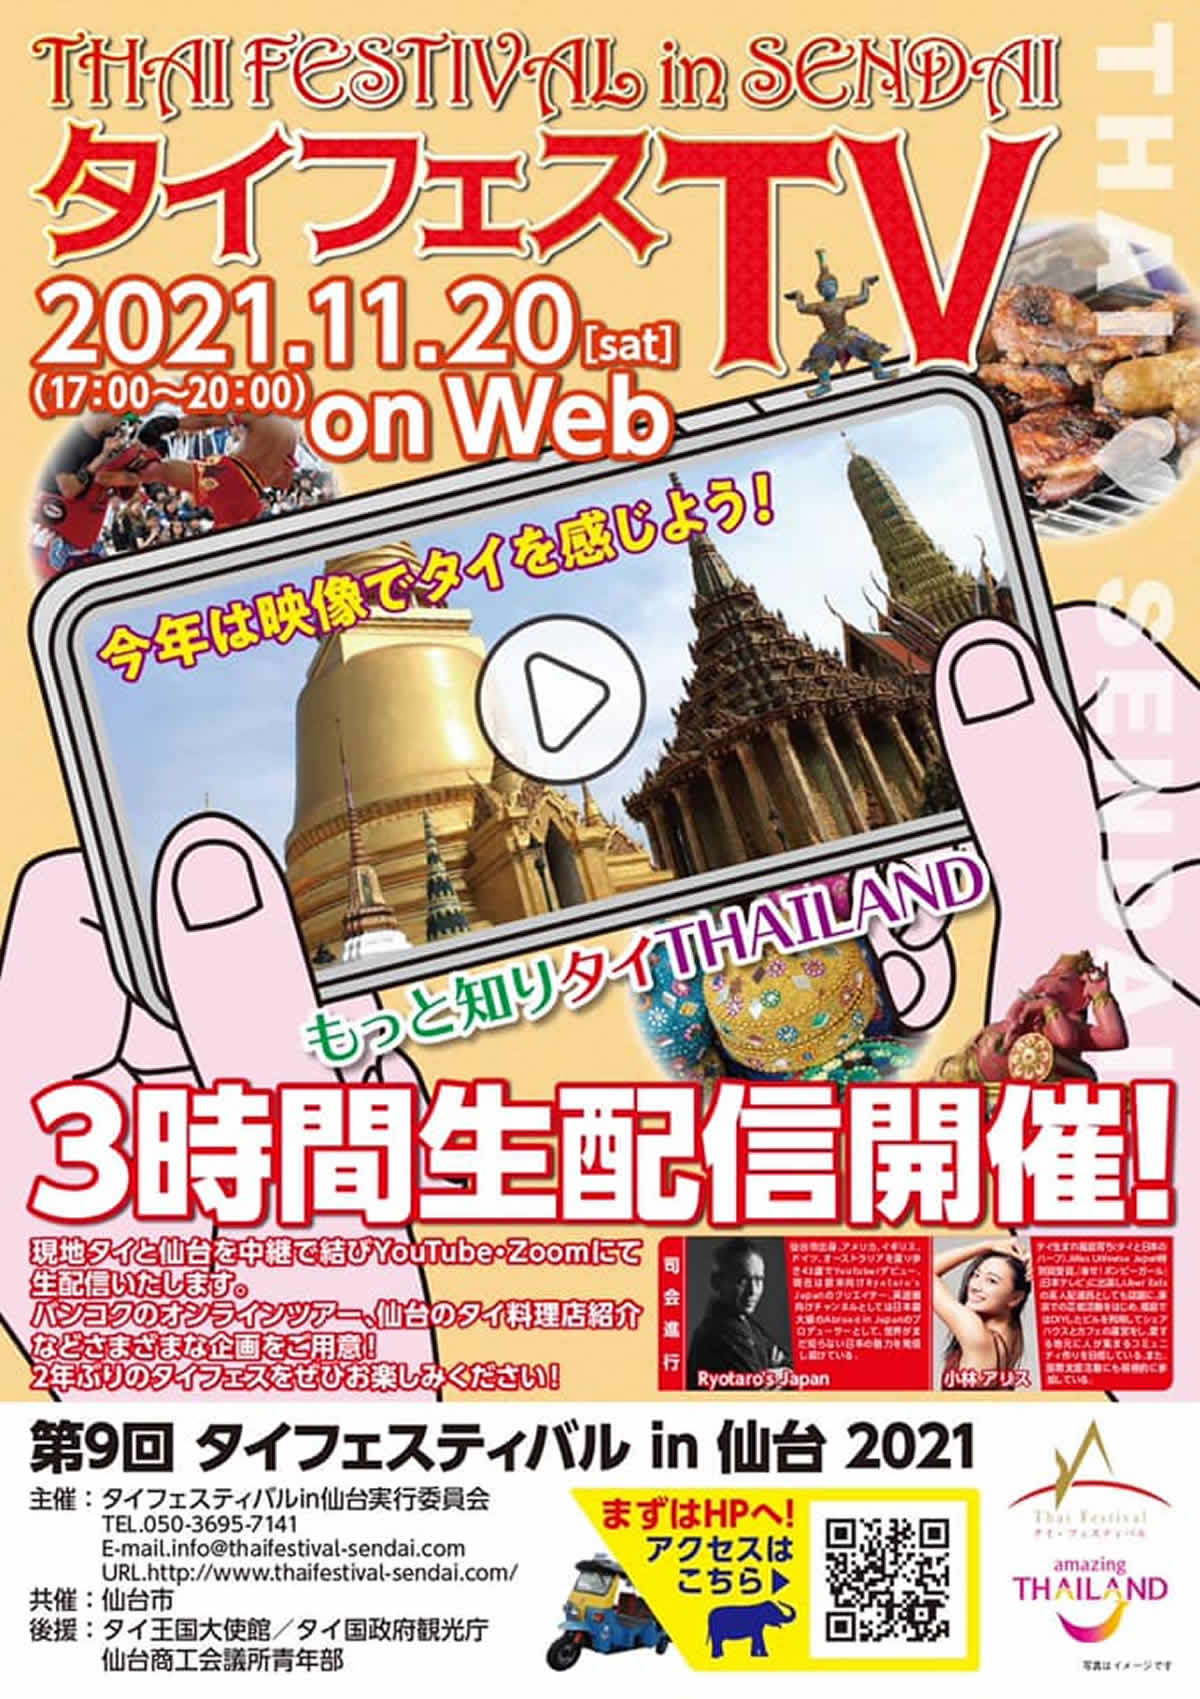 「第9回 タイフェスティバル in 仙台」が2021年11月20日(土)にオンライン開催